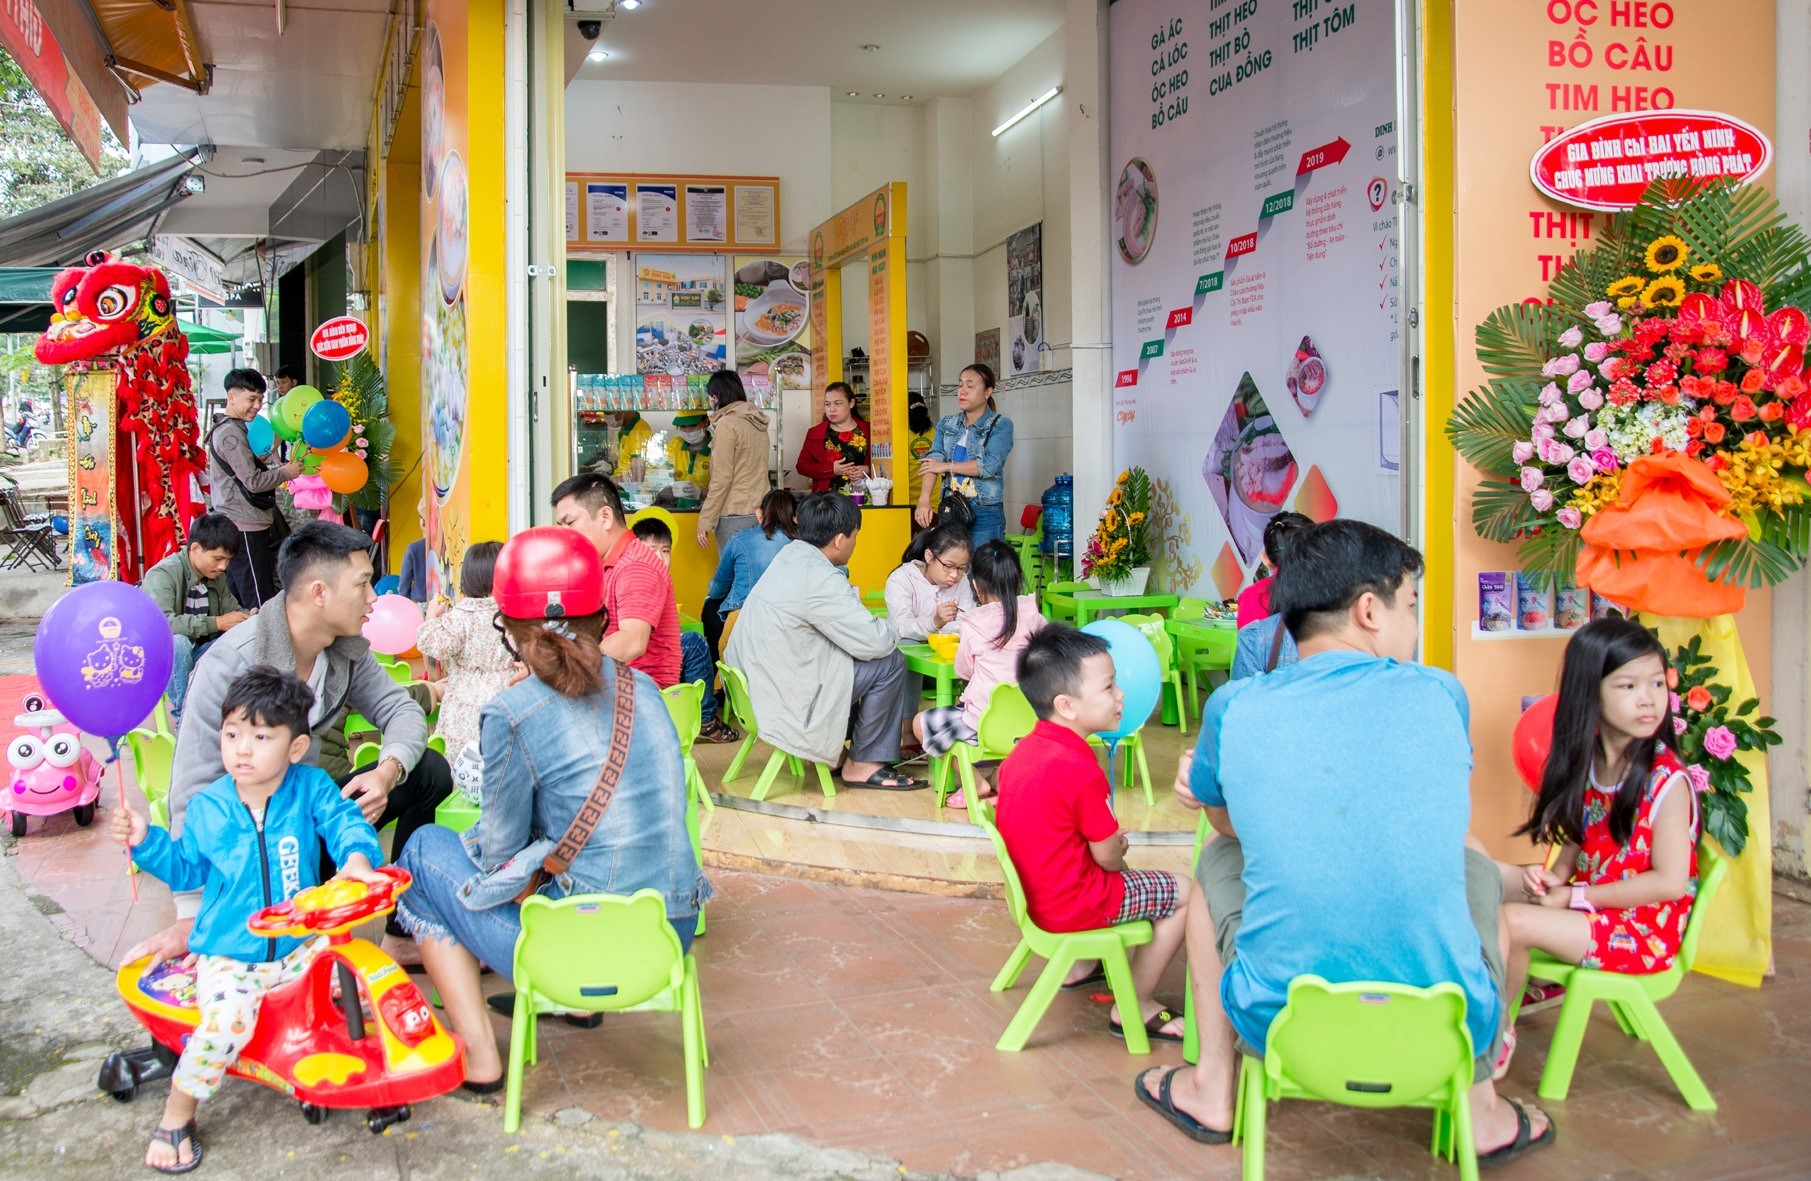 Cháo dinh dưỡng Cây Thị: Thơm Ngon - An toàn trong mùa dịch